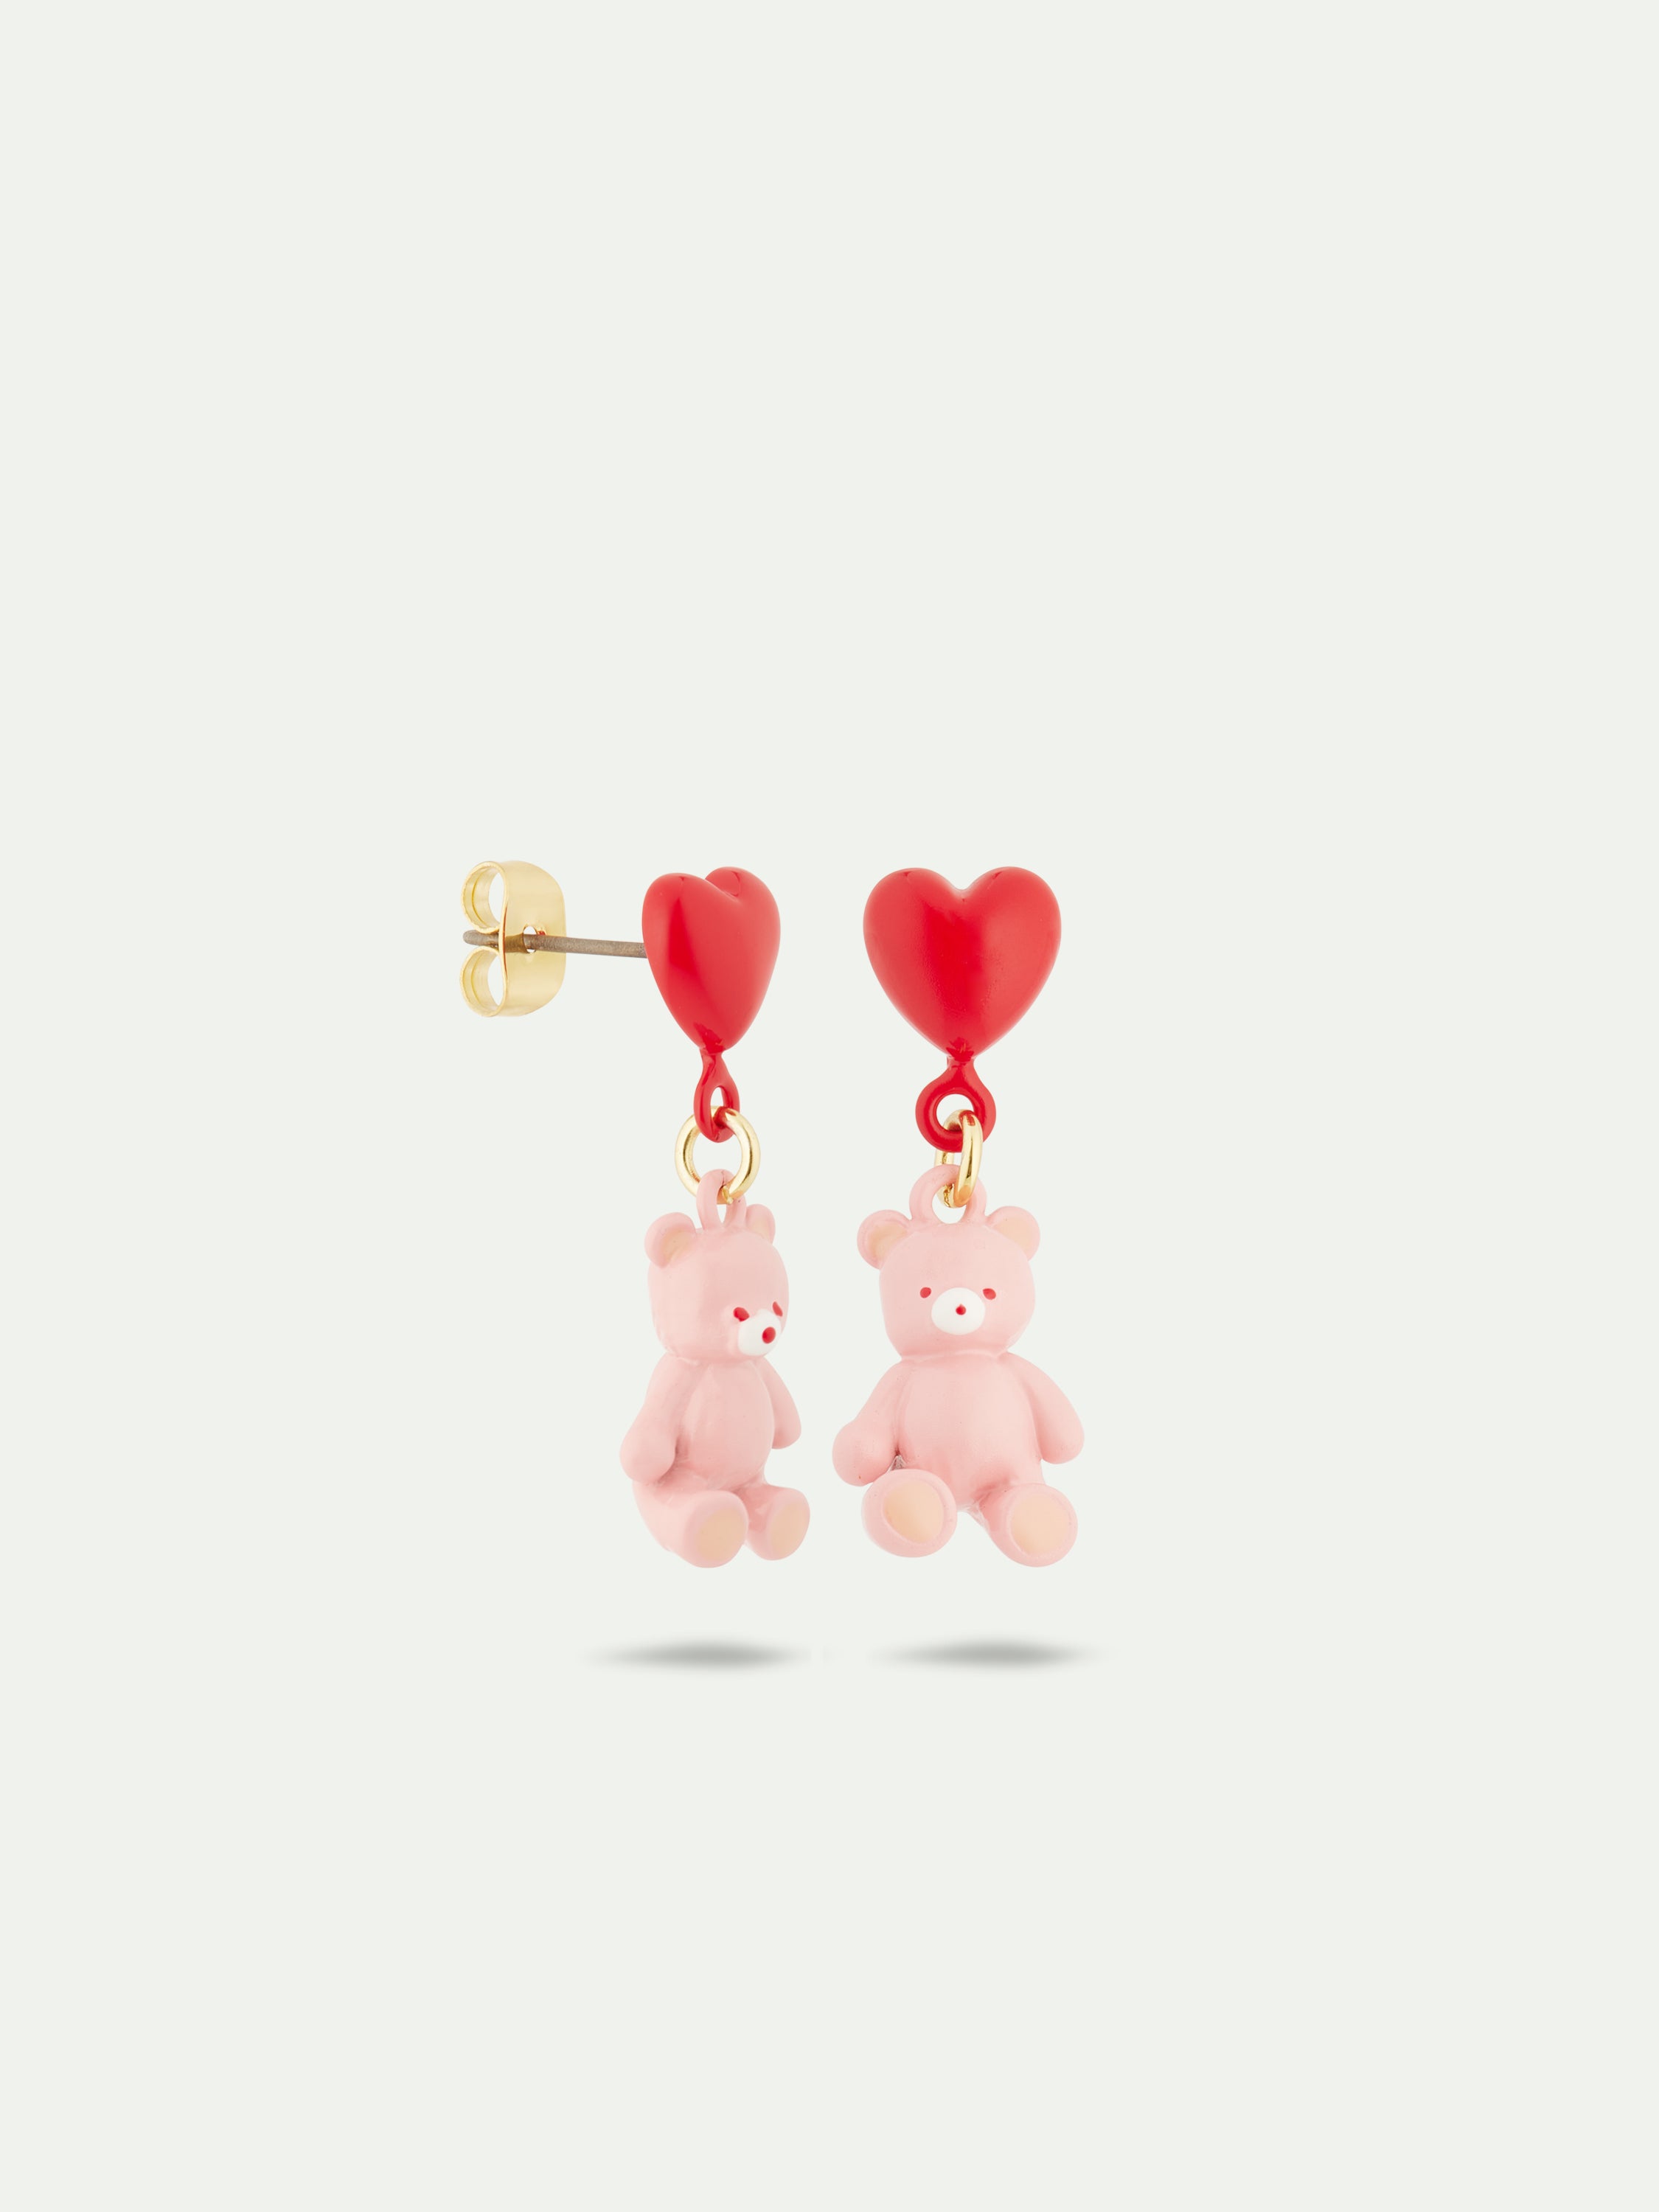 Teddy bear and heart balloon earrings